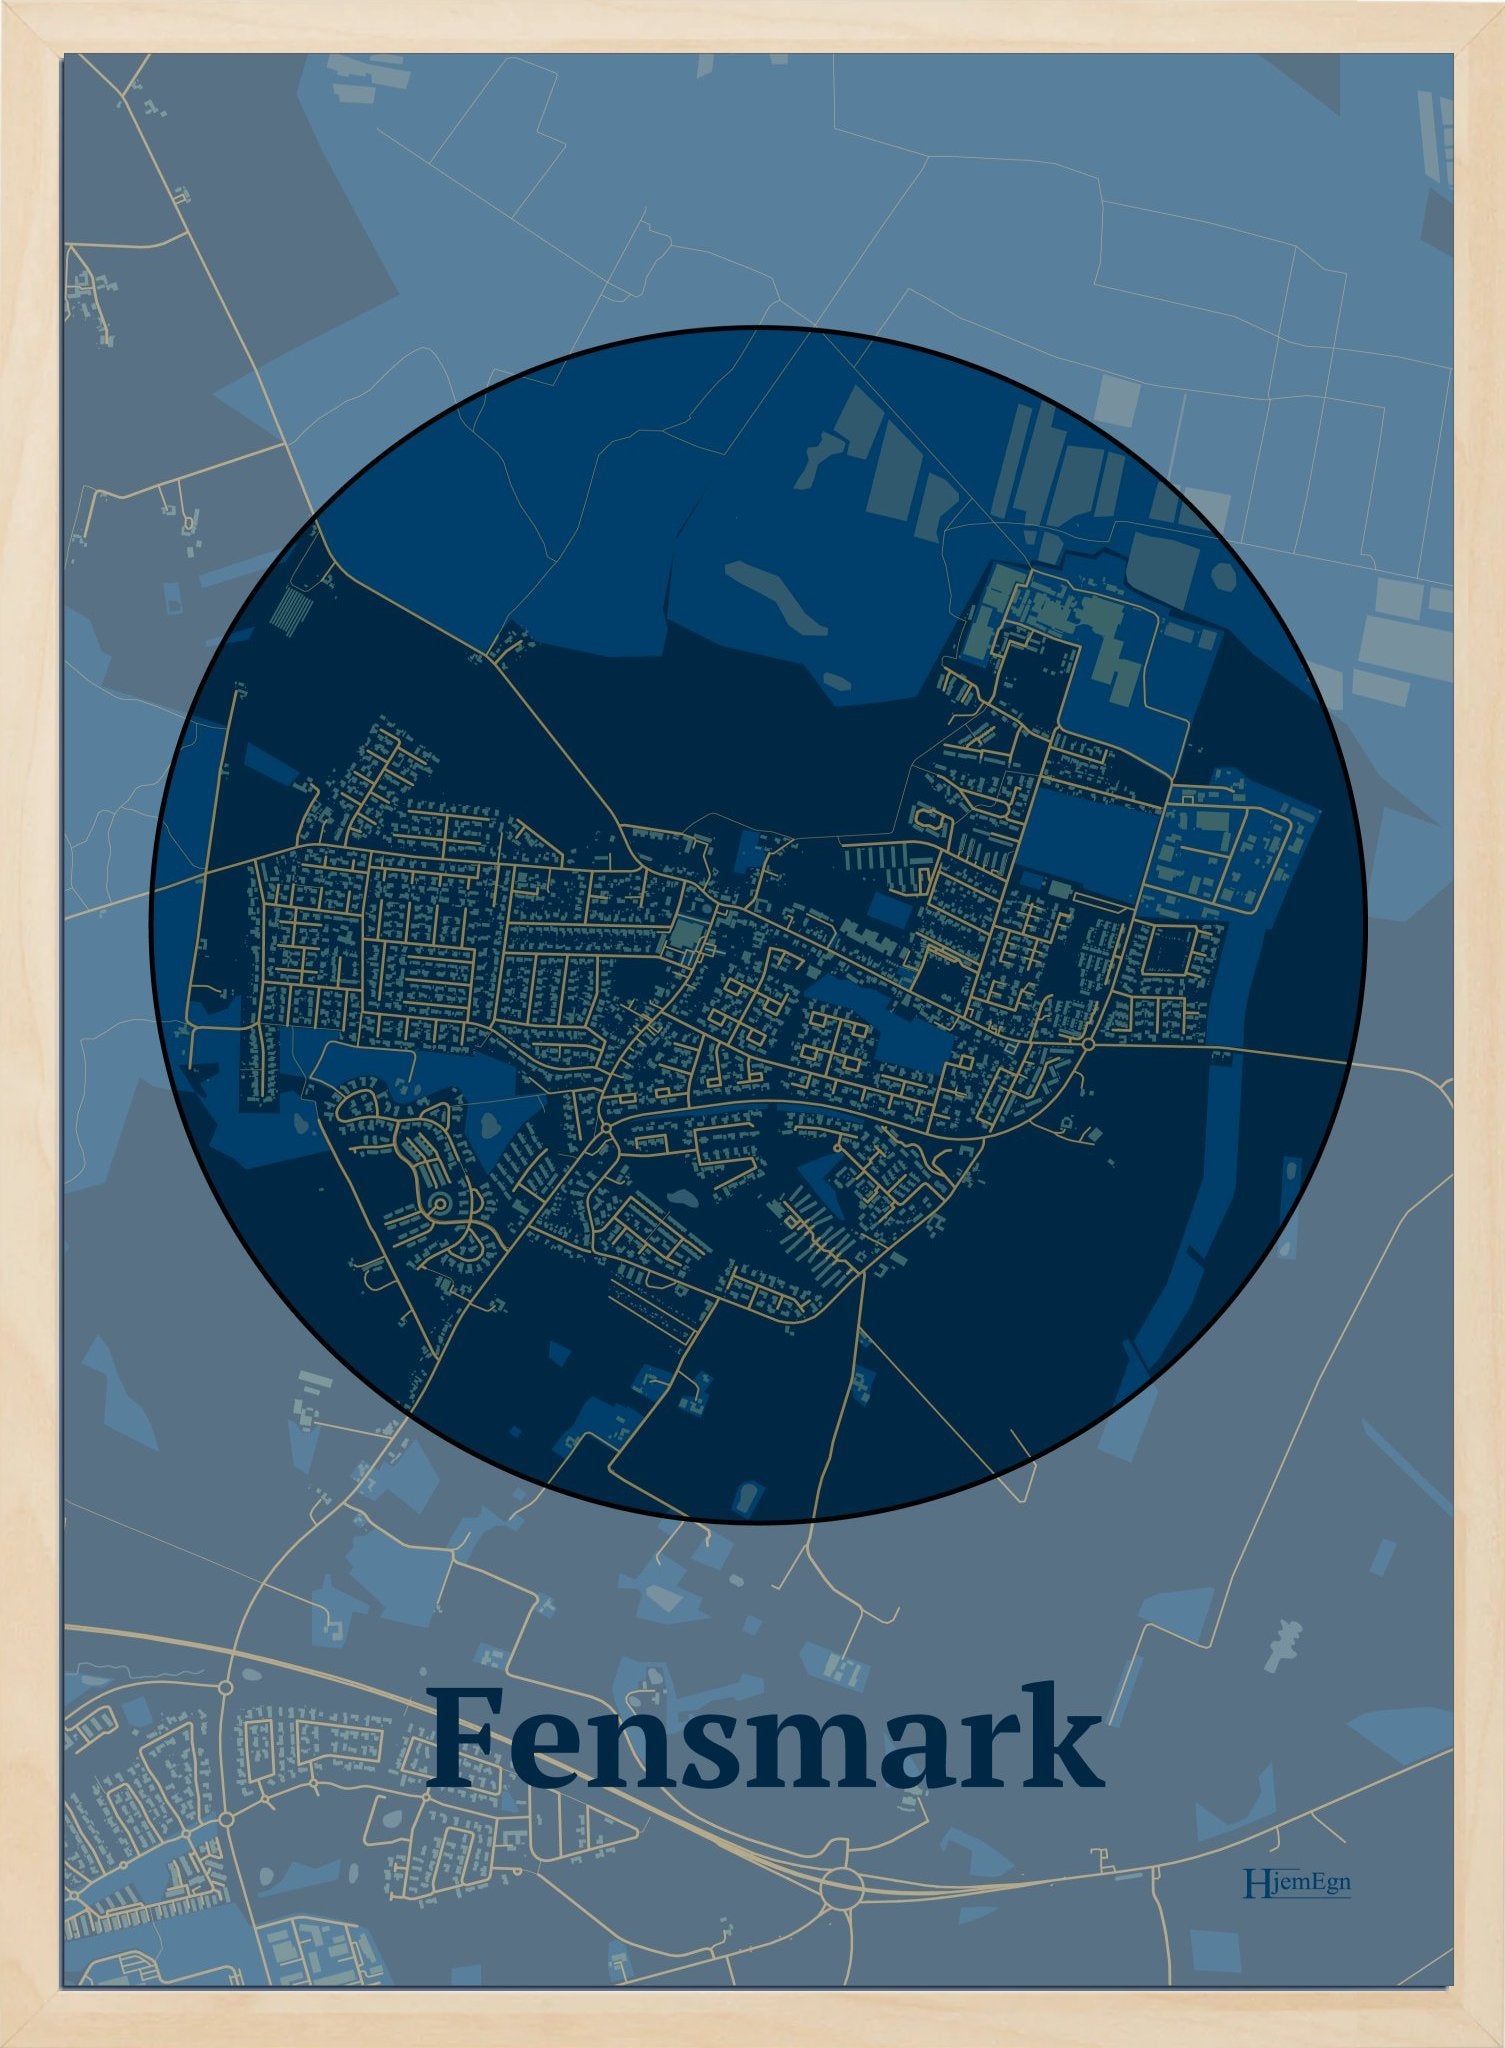 Fensmark plakat i farve mørk blå og HjemEgn.dk design centrum. Design bykort for Fensmark